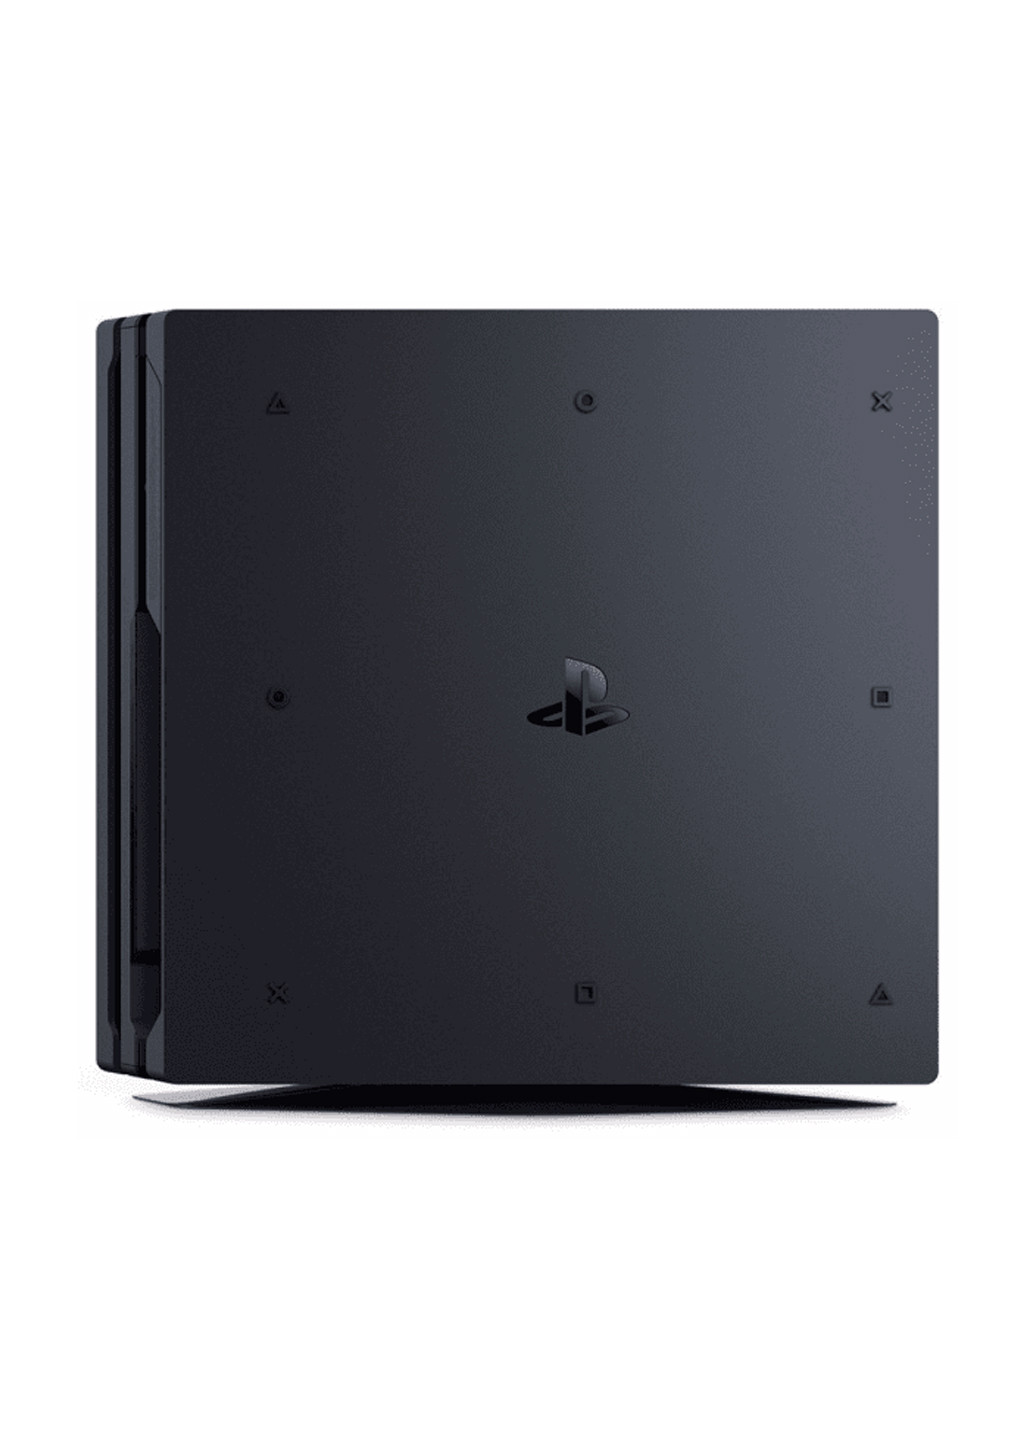 Ігрова приставка PlayStation 4 Pro 1Tb Black (God of War & Horizon Zero Dawn CE) чорна